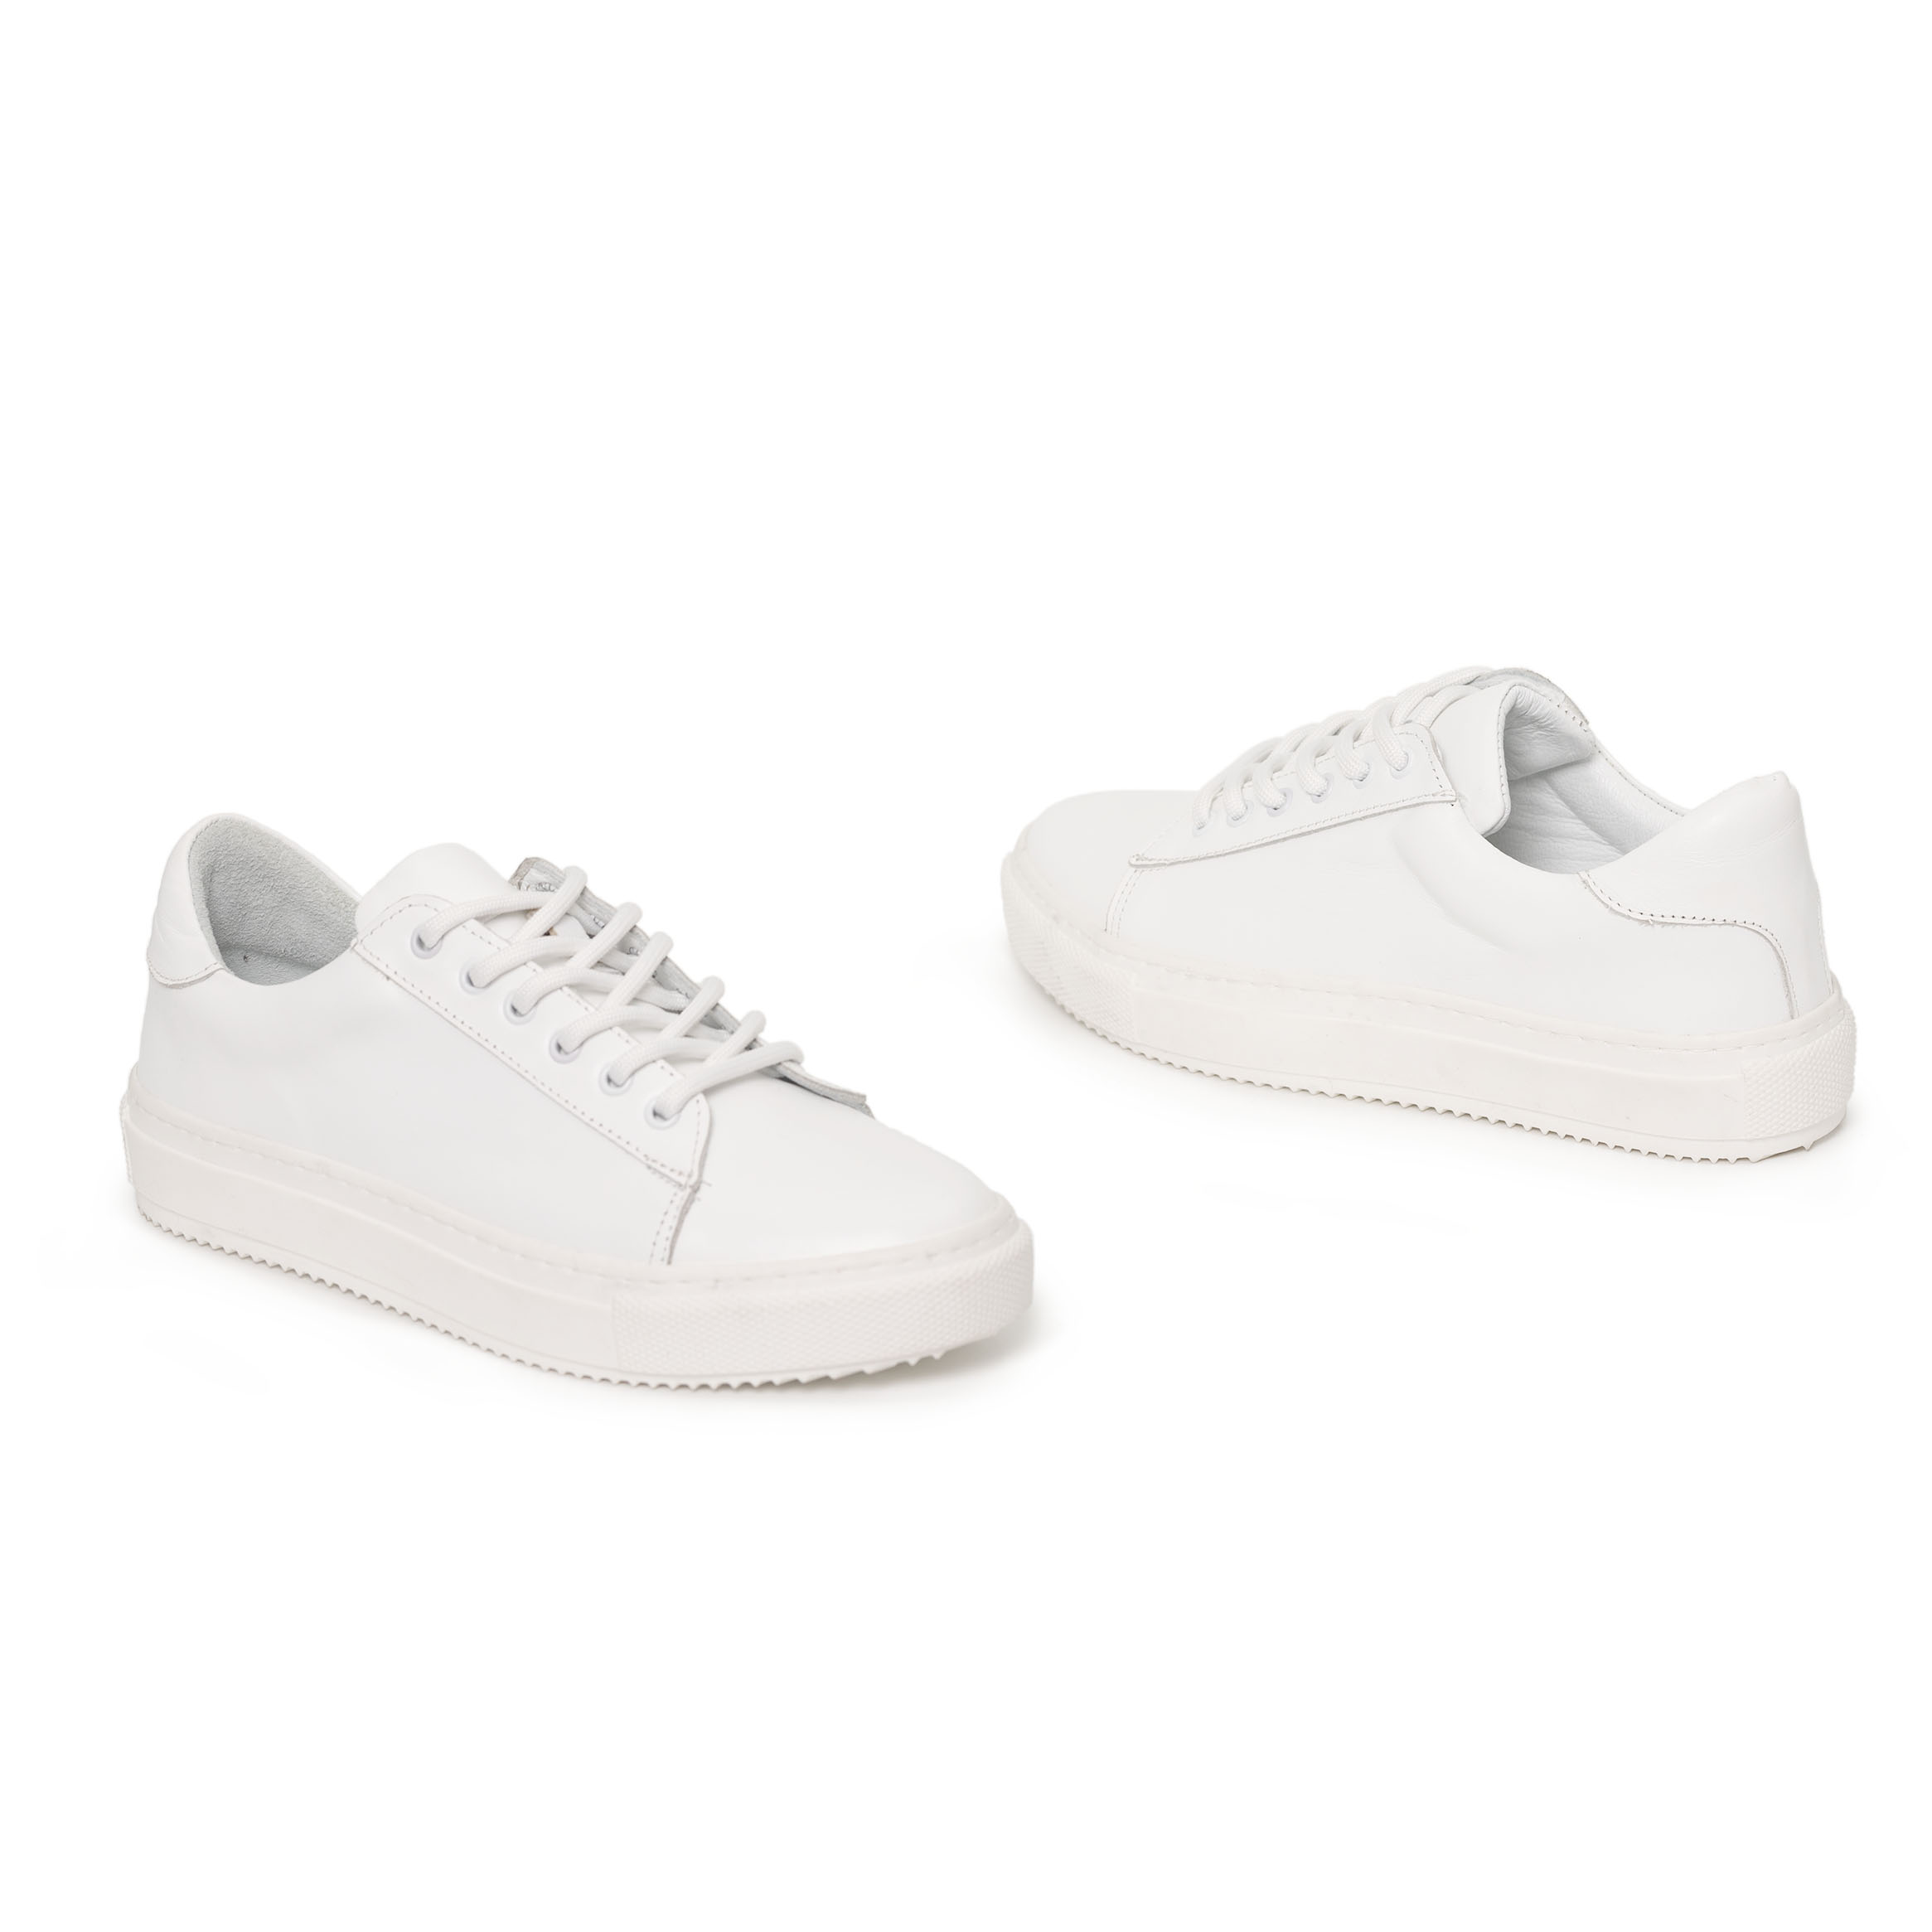 Kadın Hakiki Deri Günlük Spor Ayakkabı Beyaz/ Sneakers, Renk: Beyaz, Beden: 36